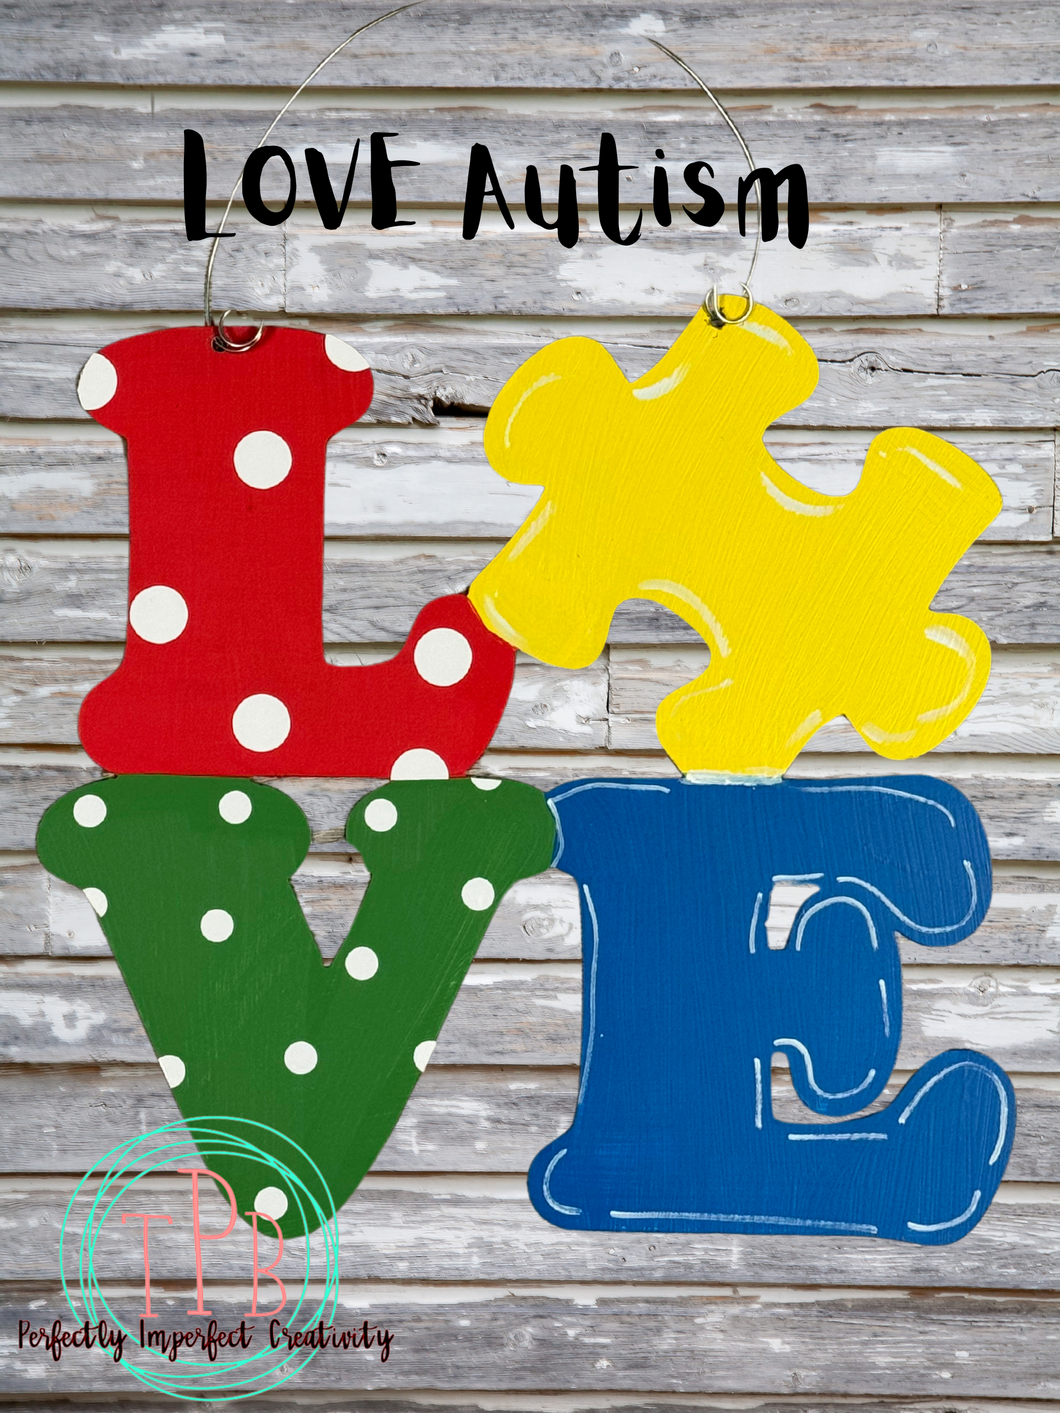 Love Autism (puzzle piece)